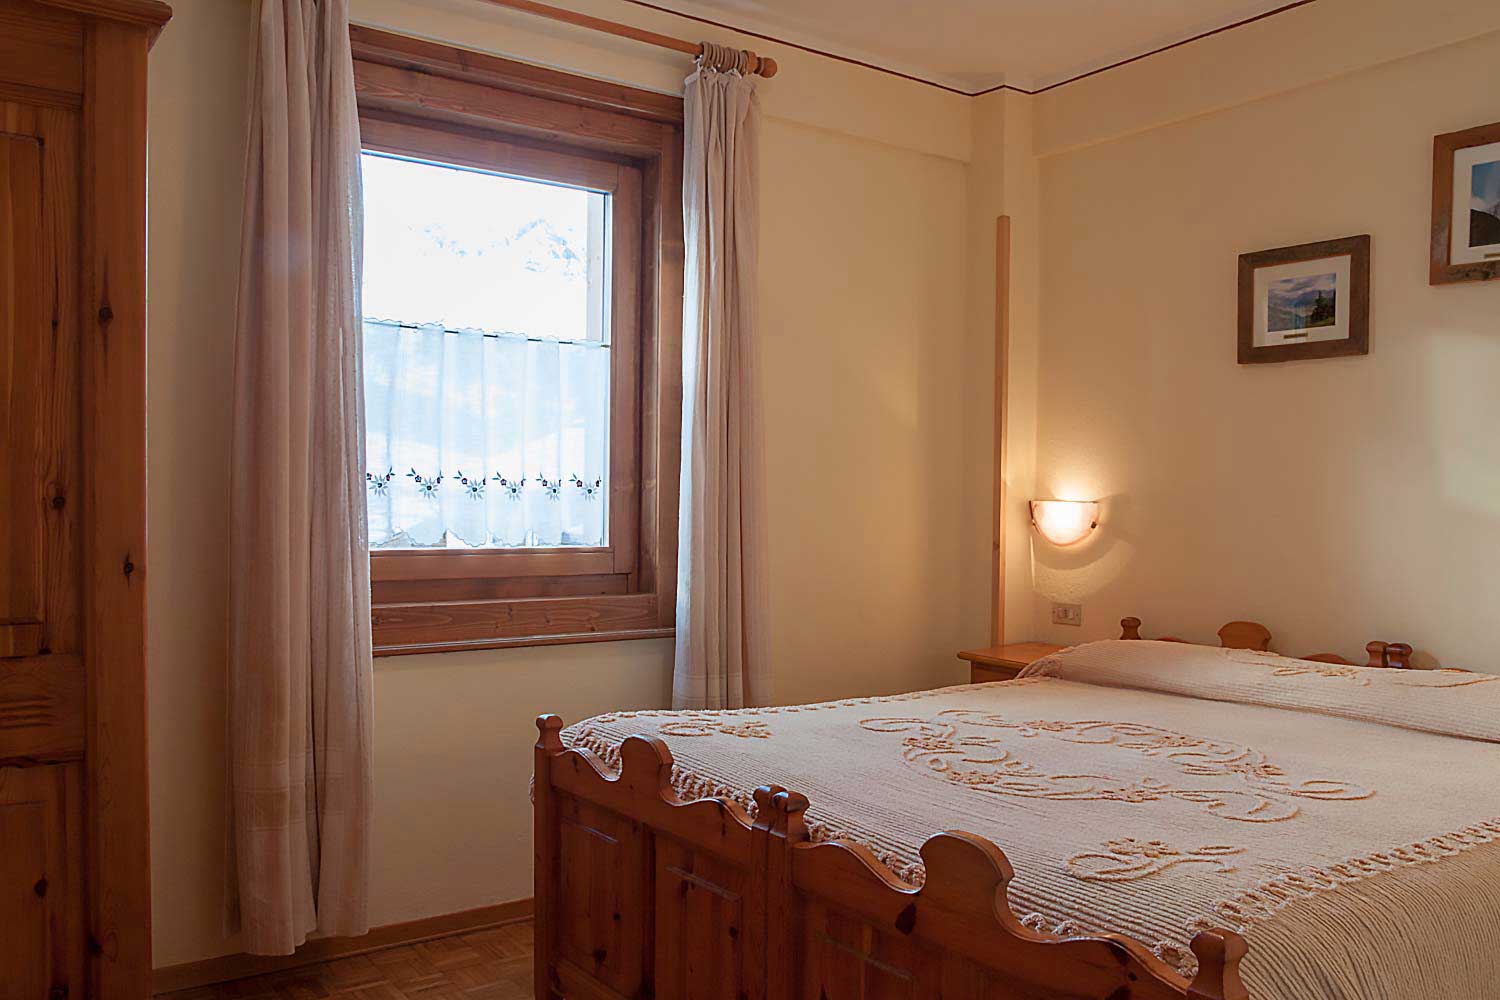 Appartamento 1 | Li Pont | Prenota il tuo appartamento in affitto a Livigno